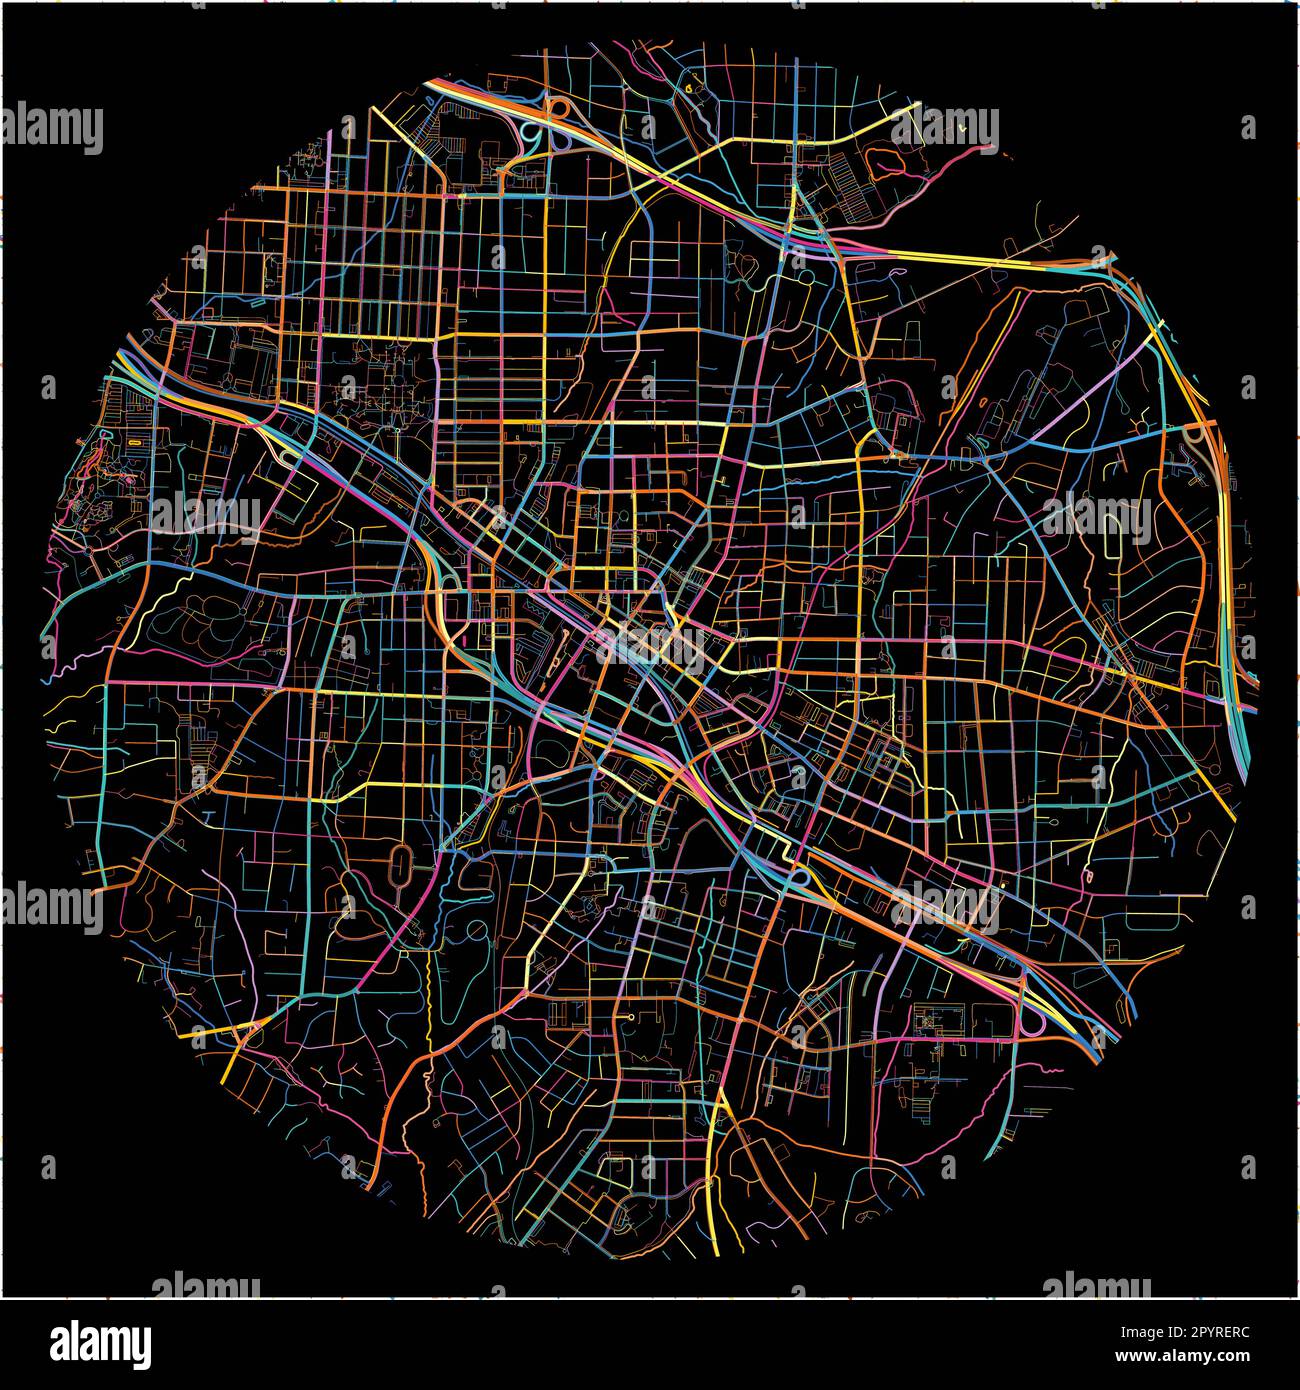 Mappa di Durham, North Carolina, con tutte le strade principali e minori, ferrovie e corsi d'acqua. Linee colorate su sfondo nero. Illustrazione Vettoriale